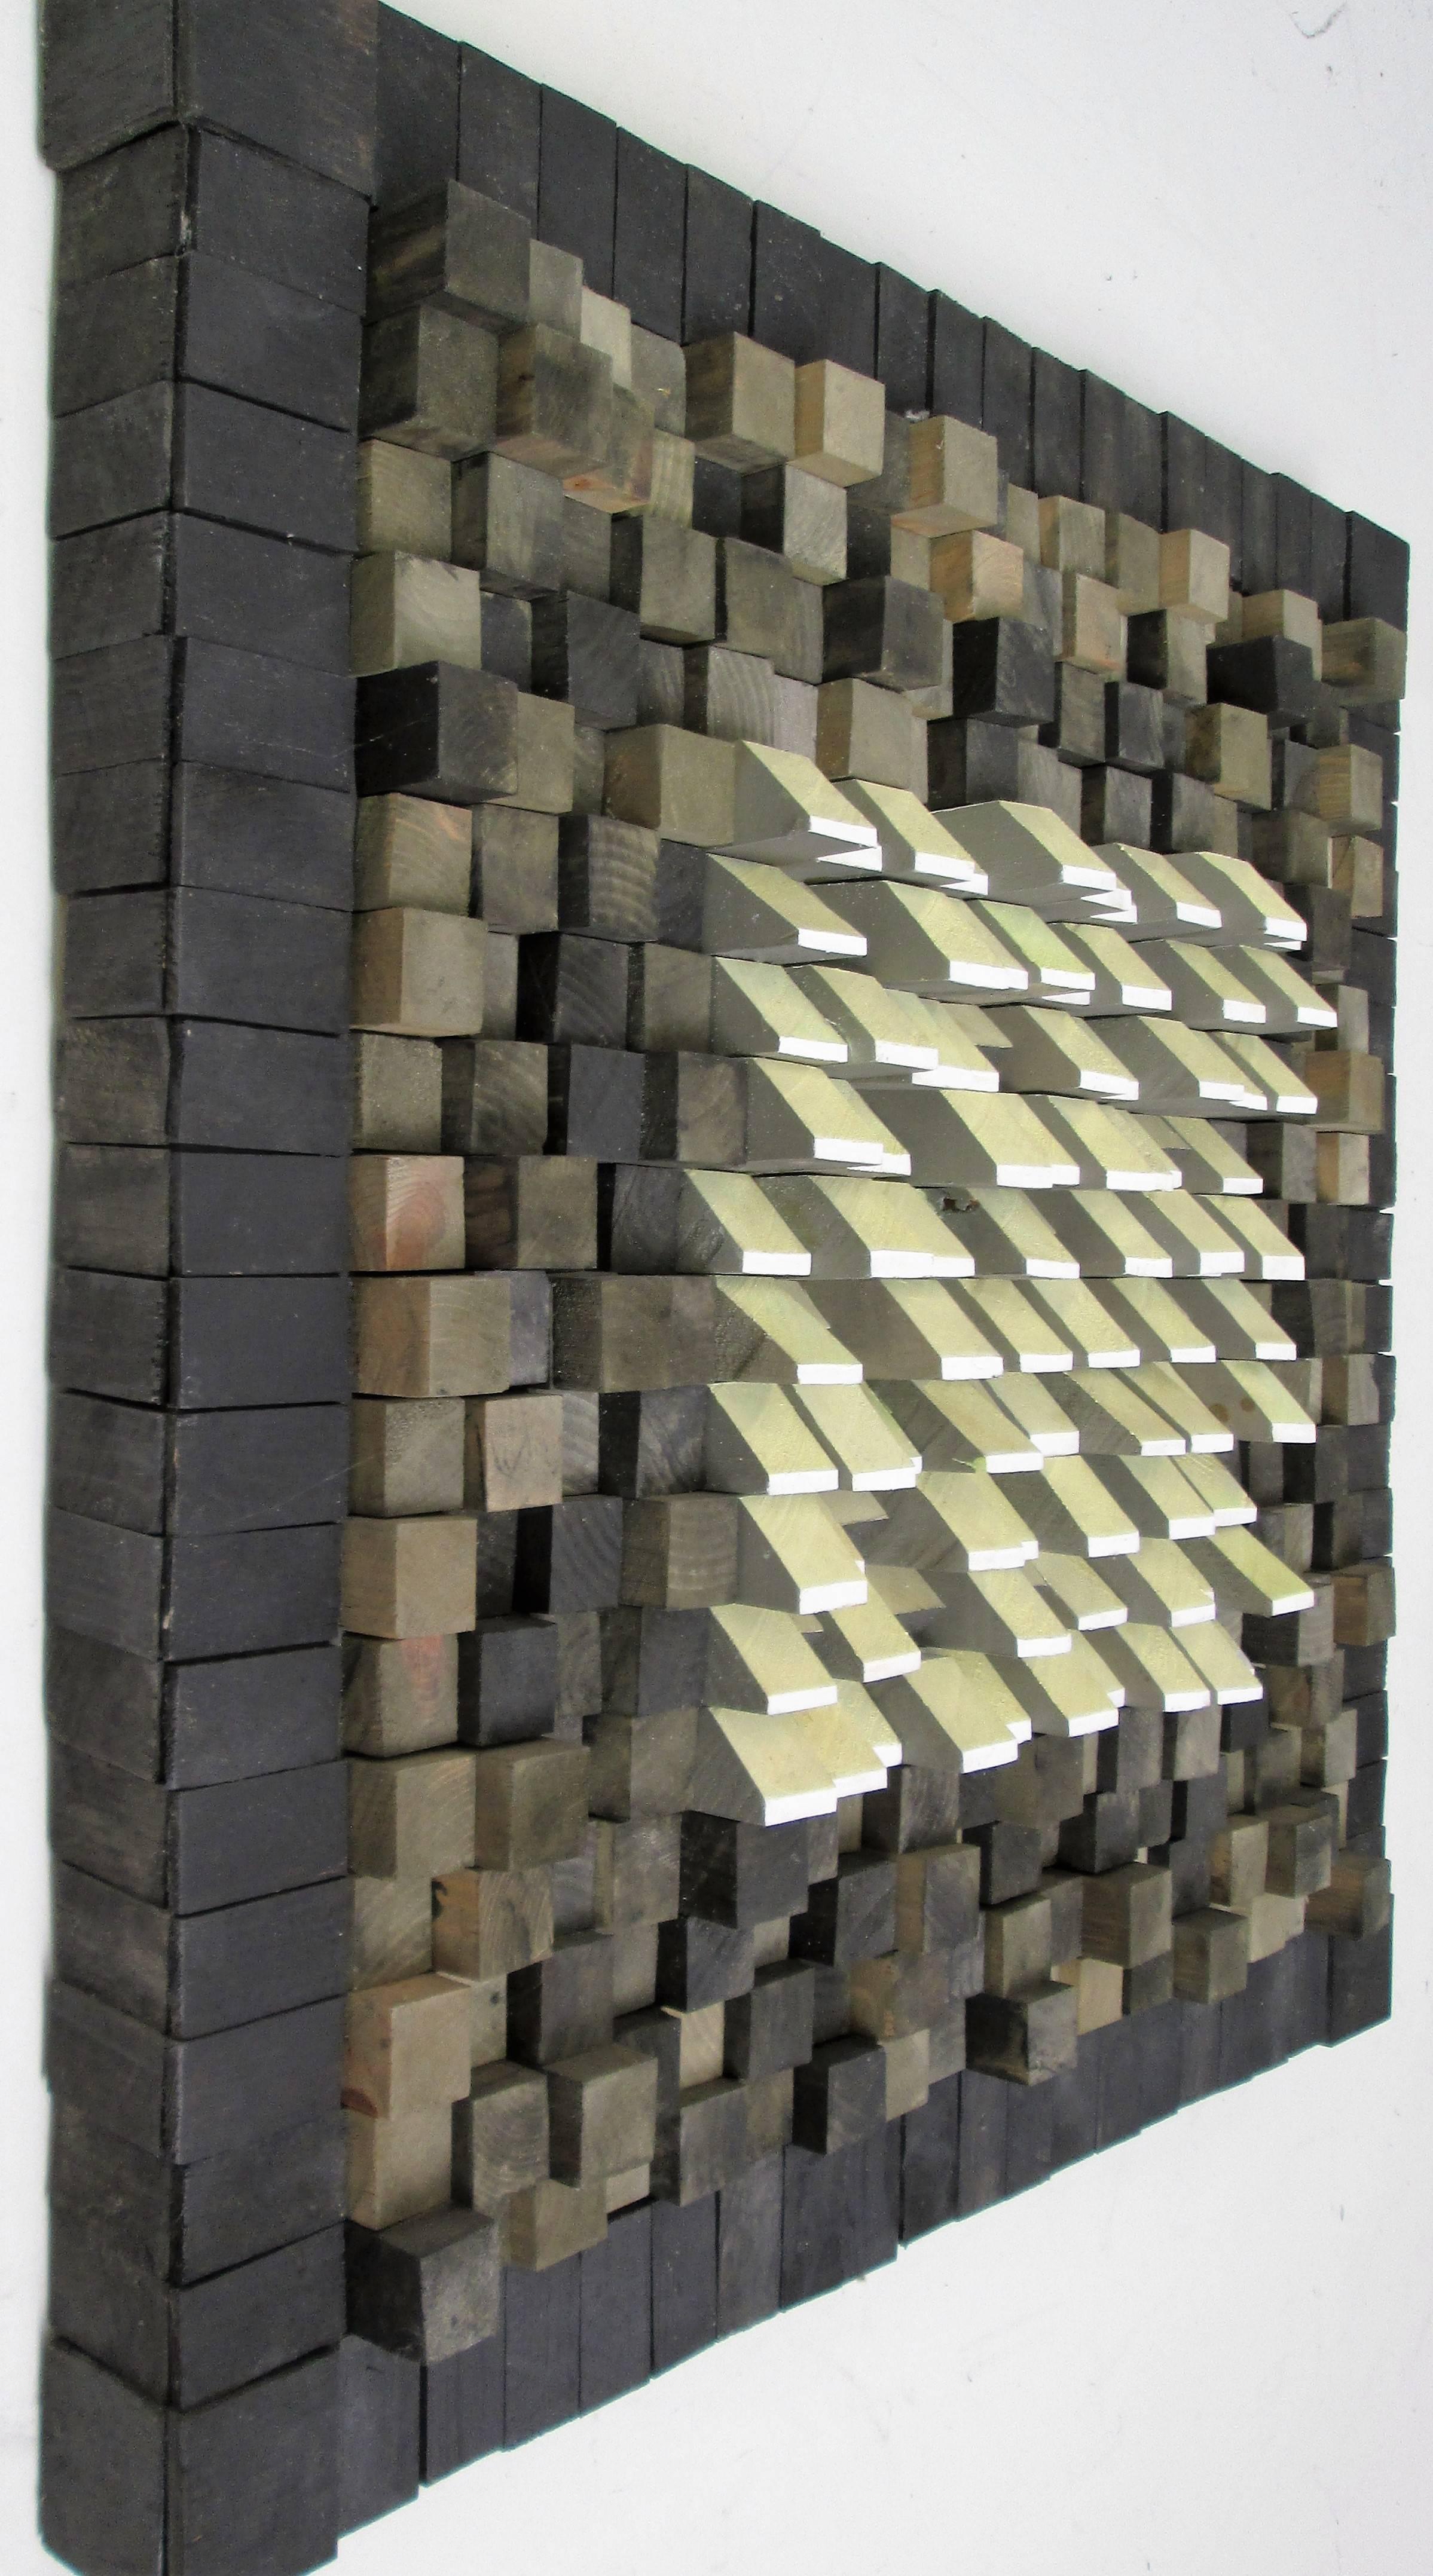 24 x 24 Zoll
Sorgfältig geschnitzte und handbemalte Holzblöcke, die dann mit schwarzer und hellgelber Acrylfarbe eingefärbt und auf eine 24 x 24 cm große Holzplatte geklebt wurden.

Diese moderne, quadratische, minimalistische, farbige